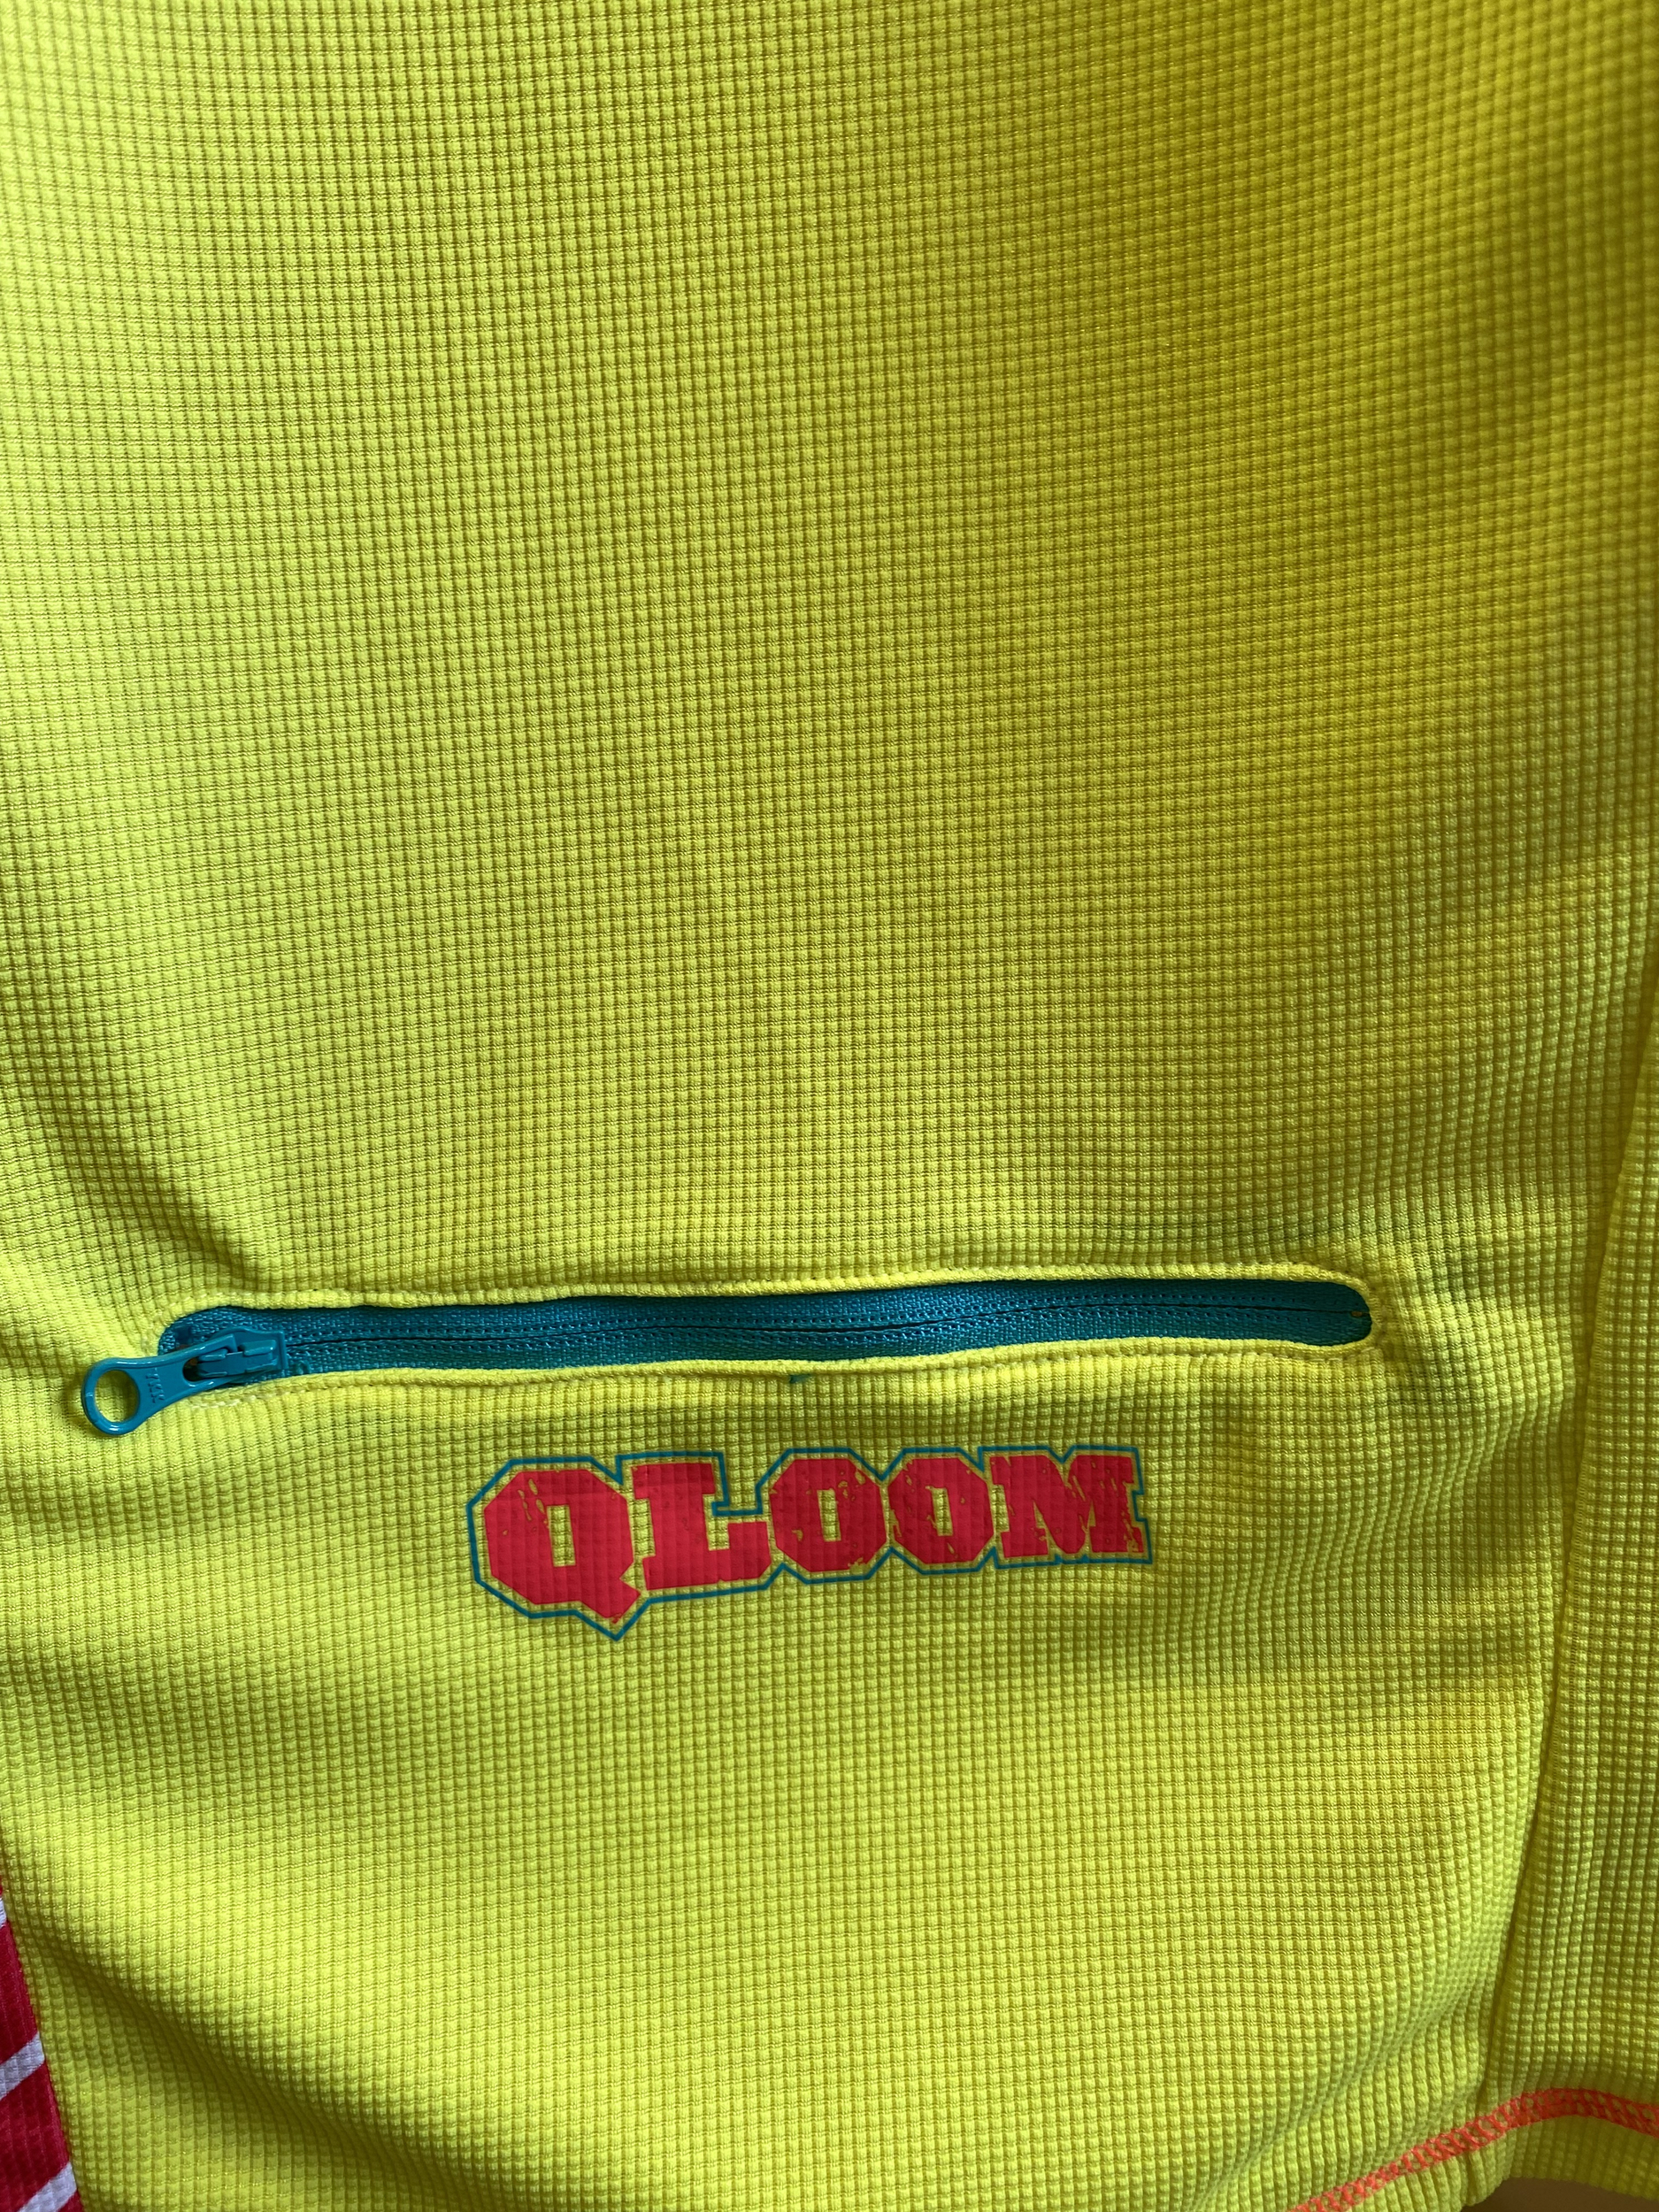 QLOOM-T-shirt-cyclisme-F-TWEADHEADS-short-sleeves-Taille-M